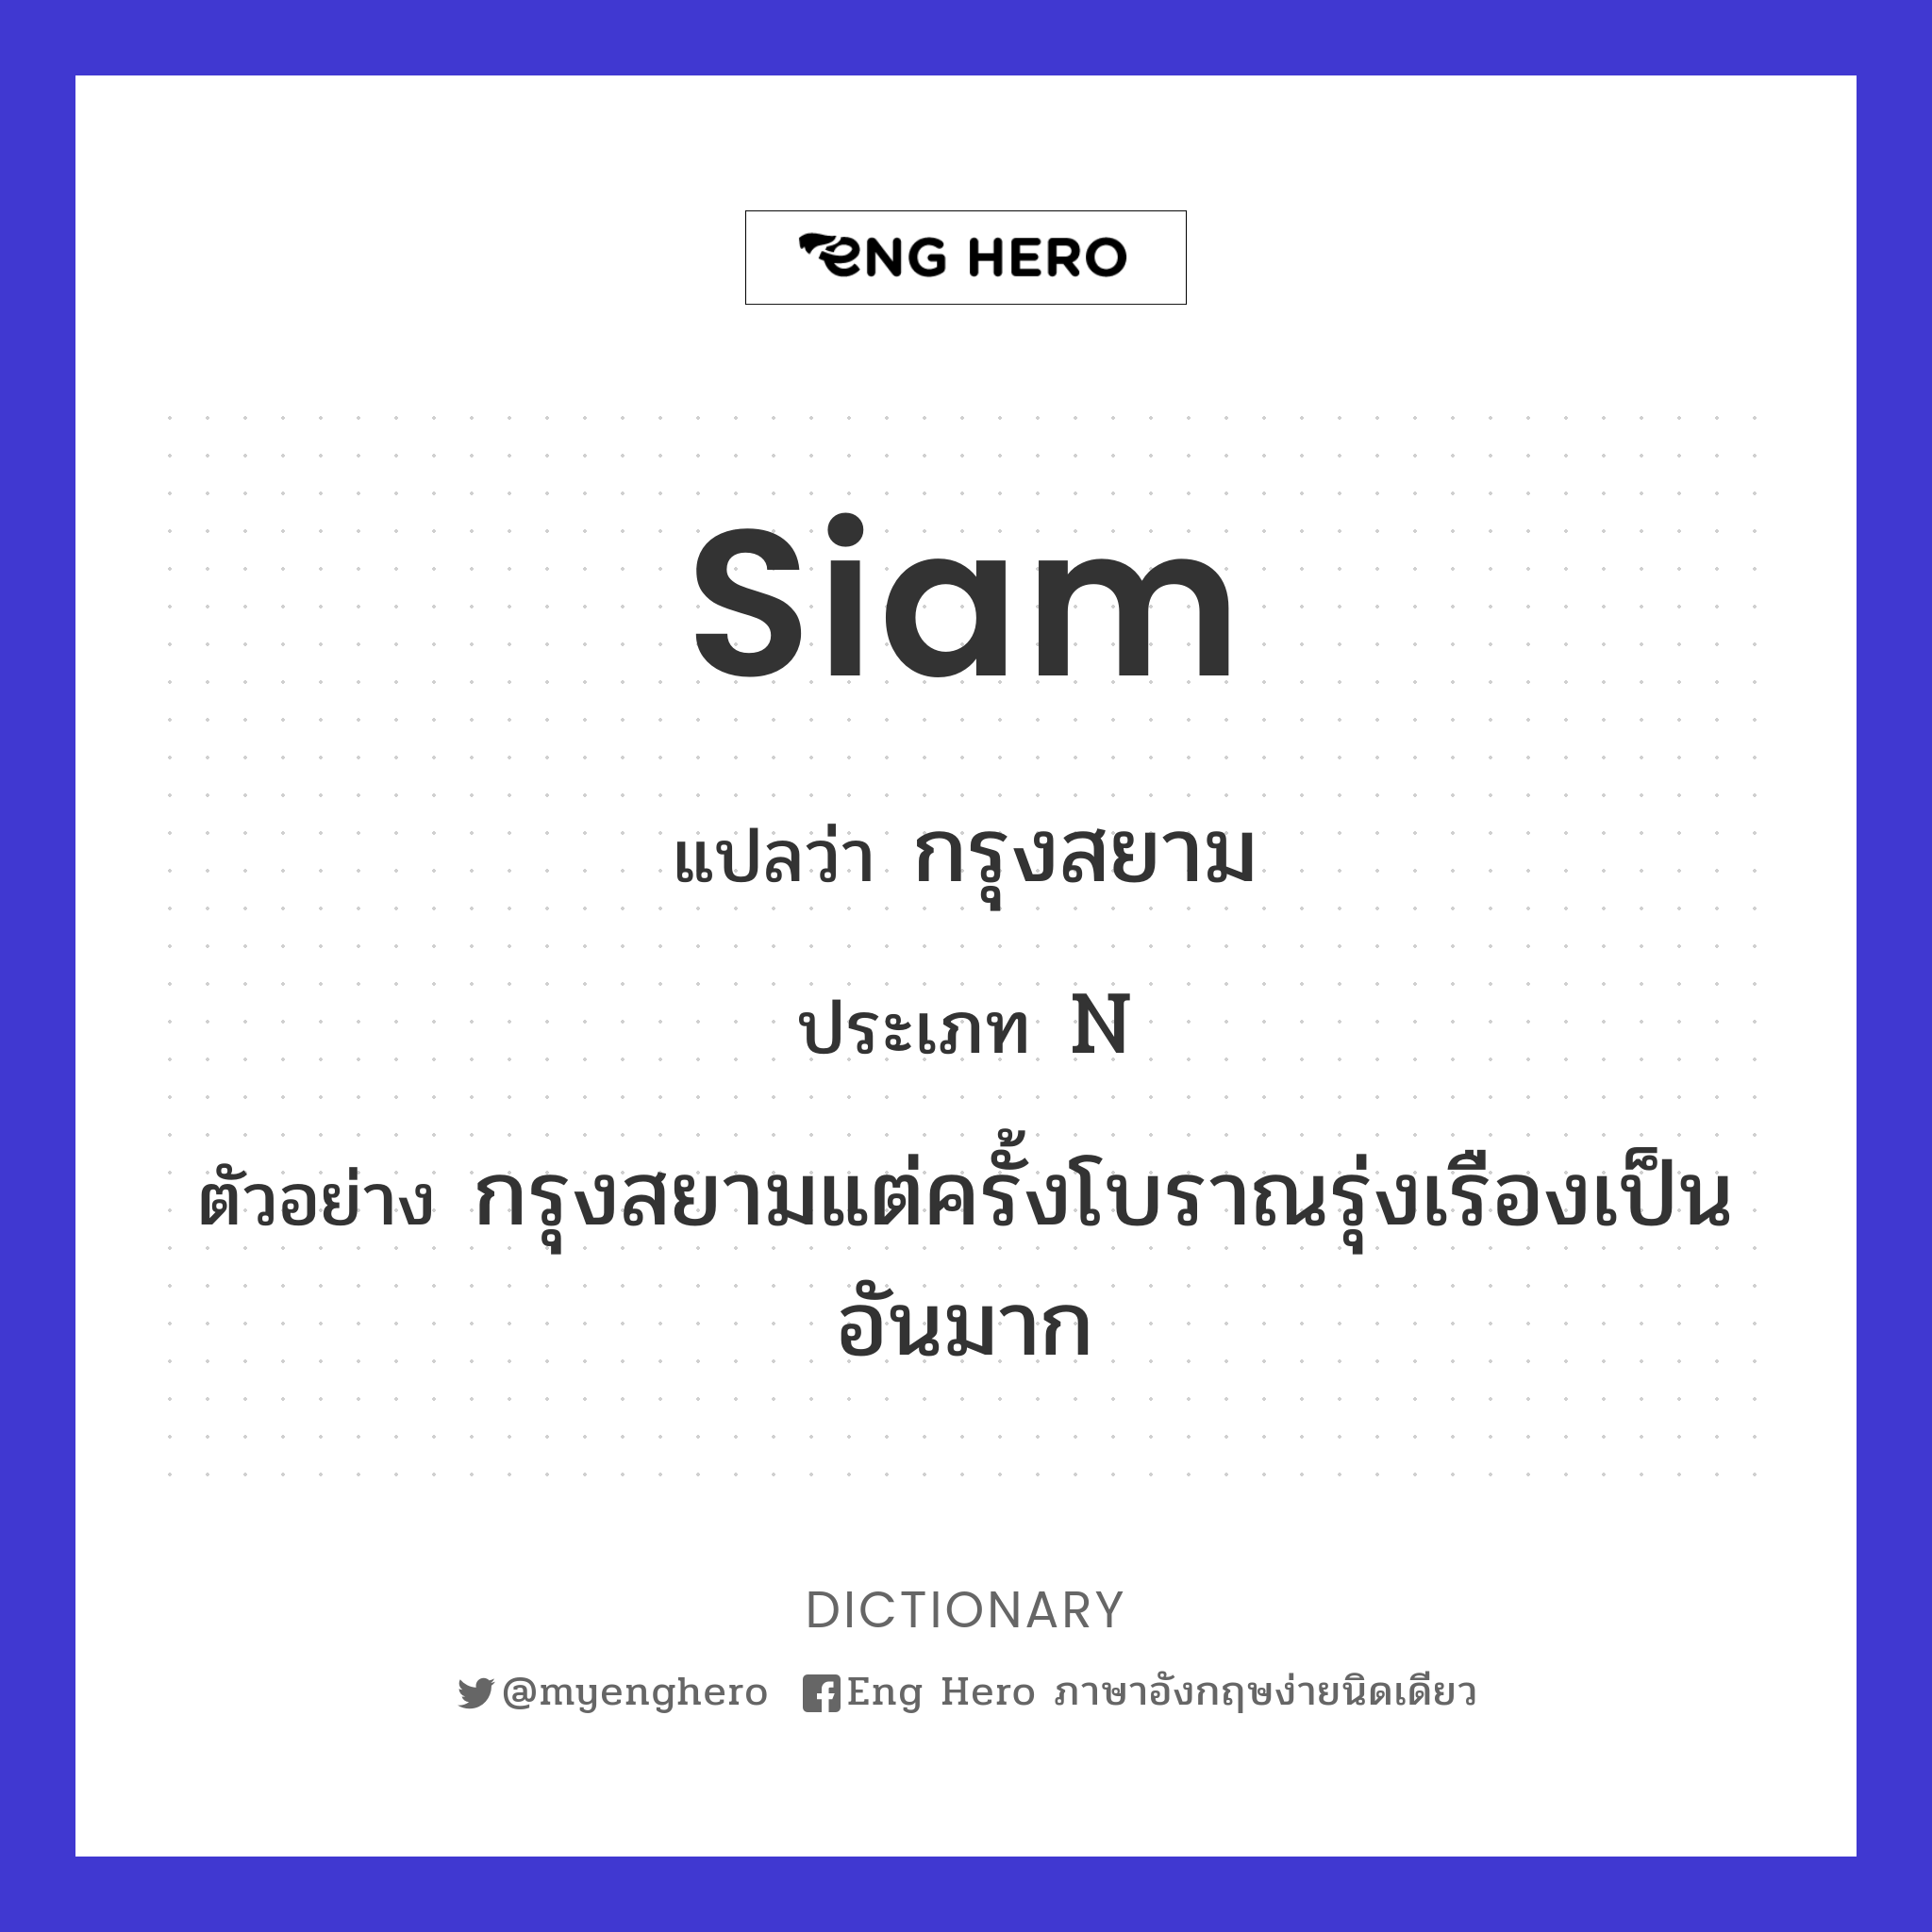 Siam